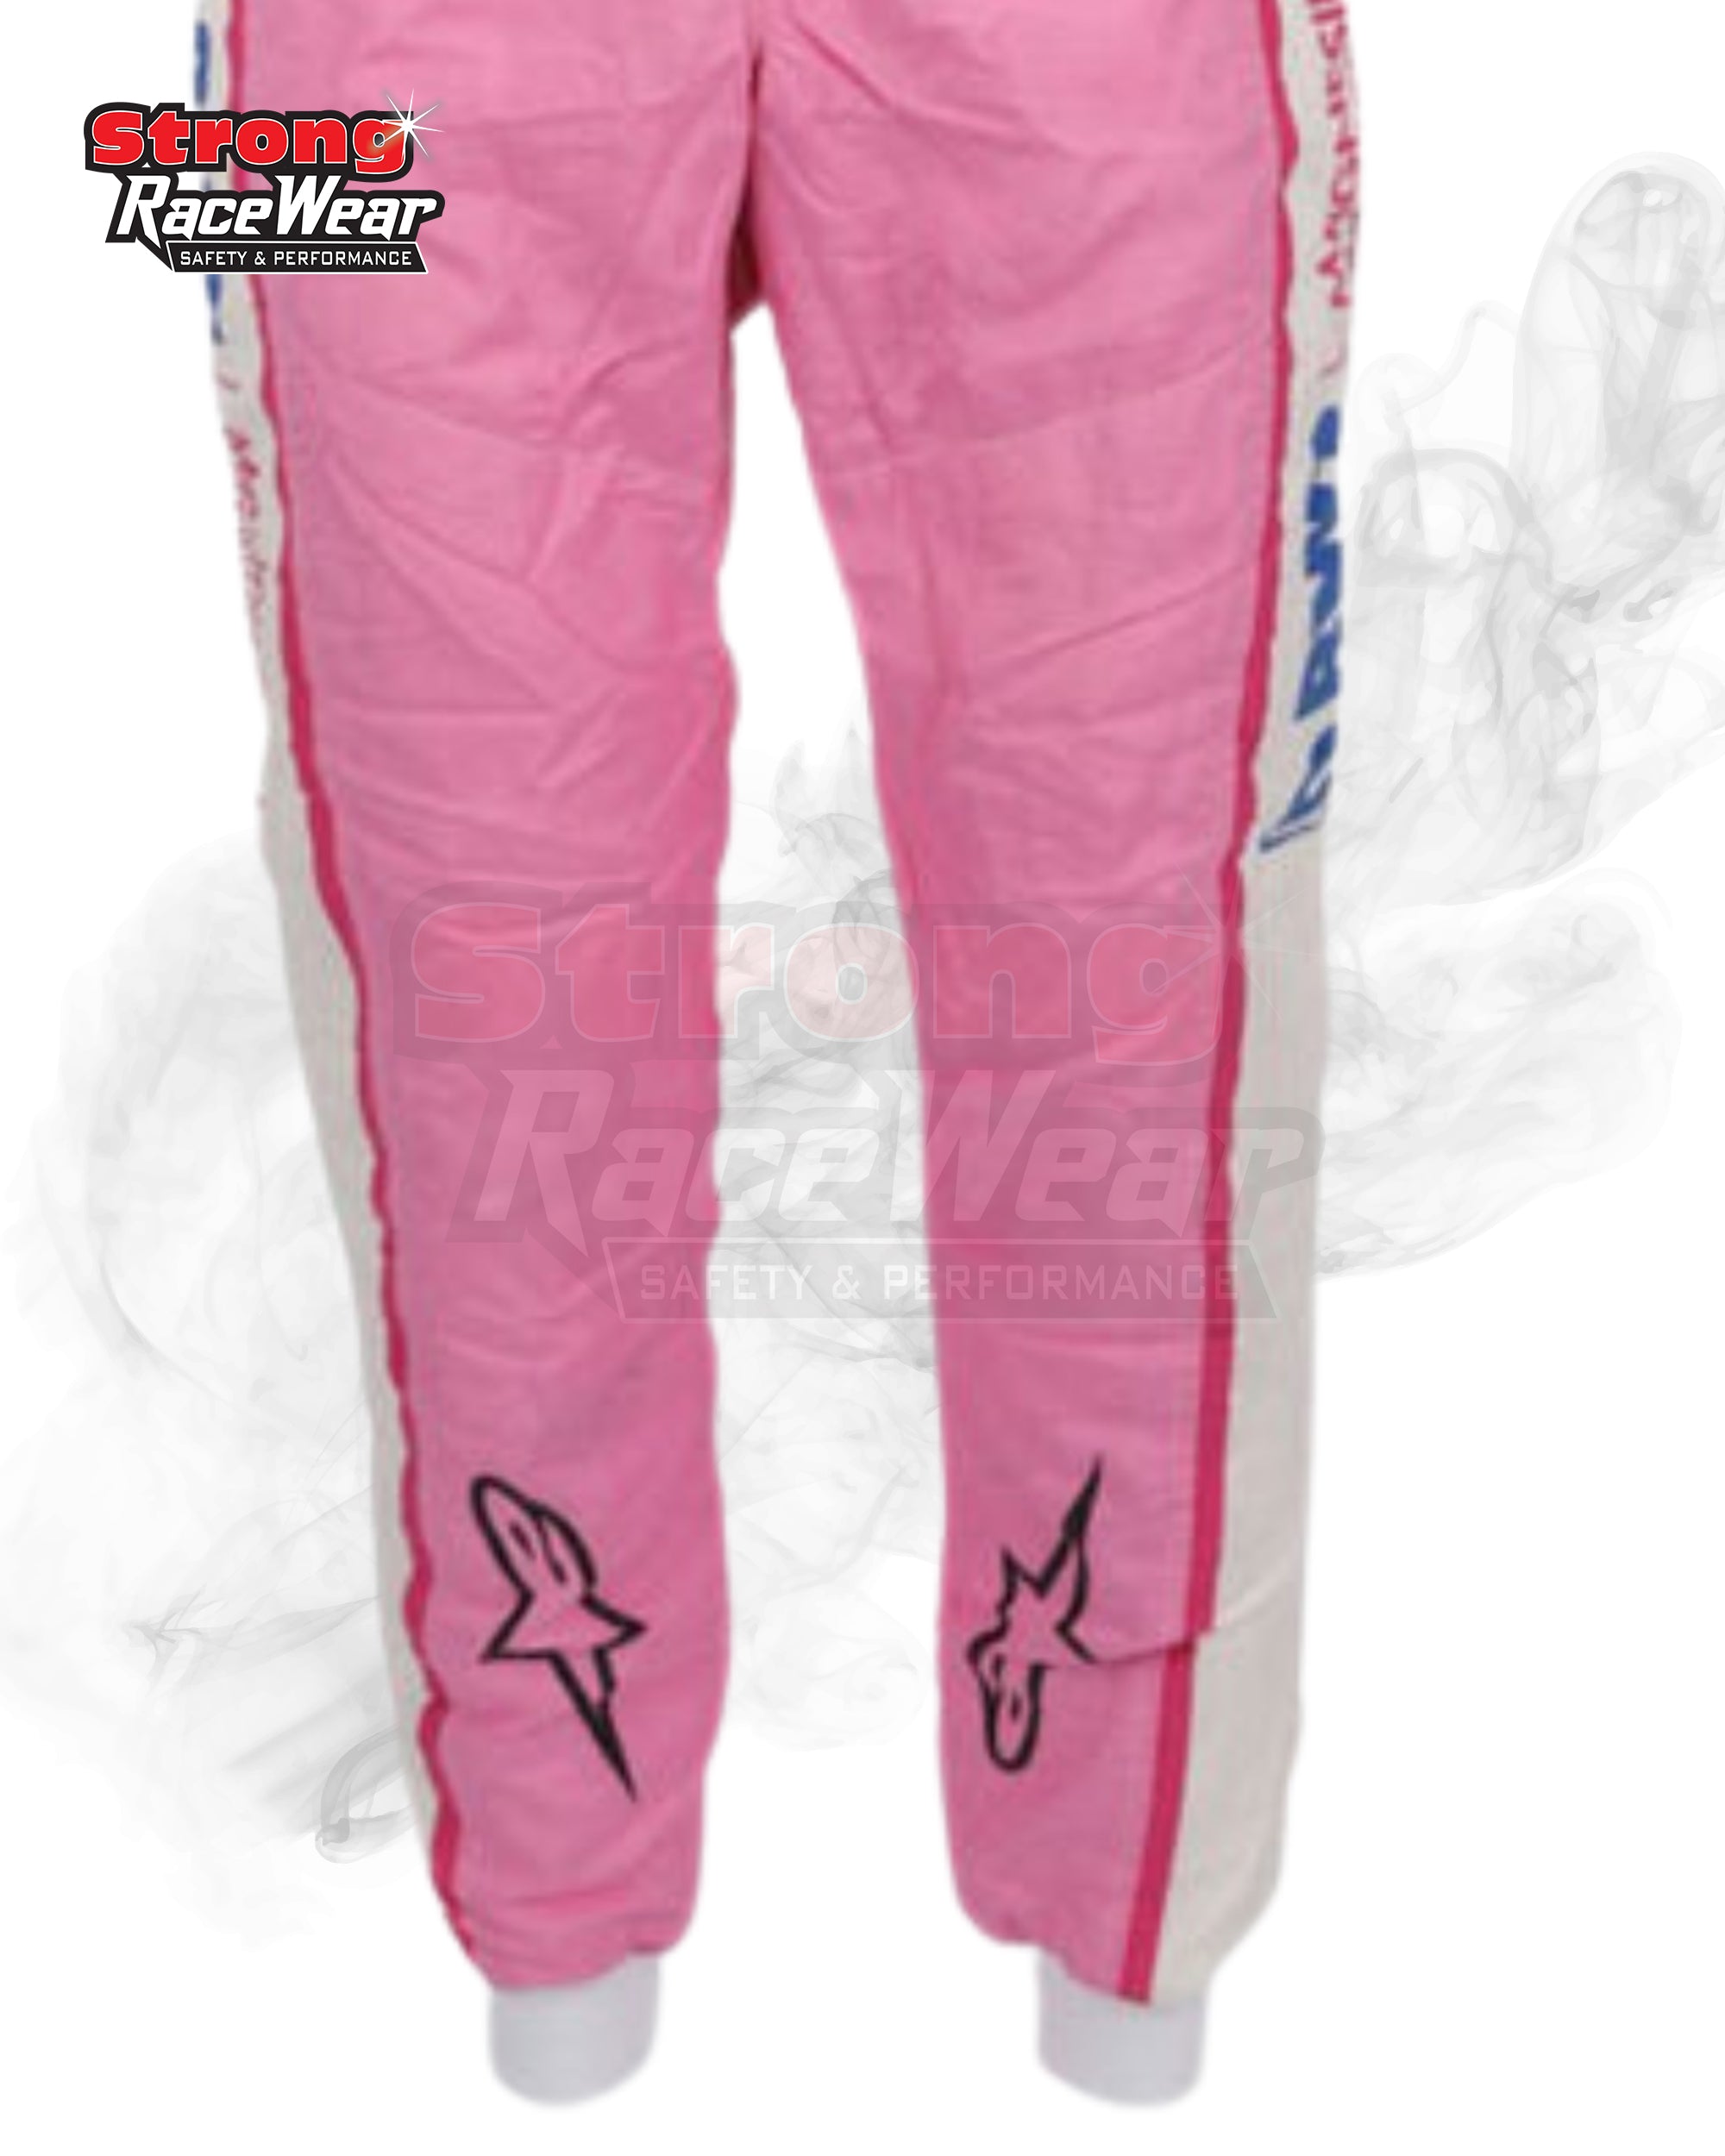 Nico Hulkenberg 2020 Racing Suit